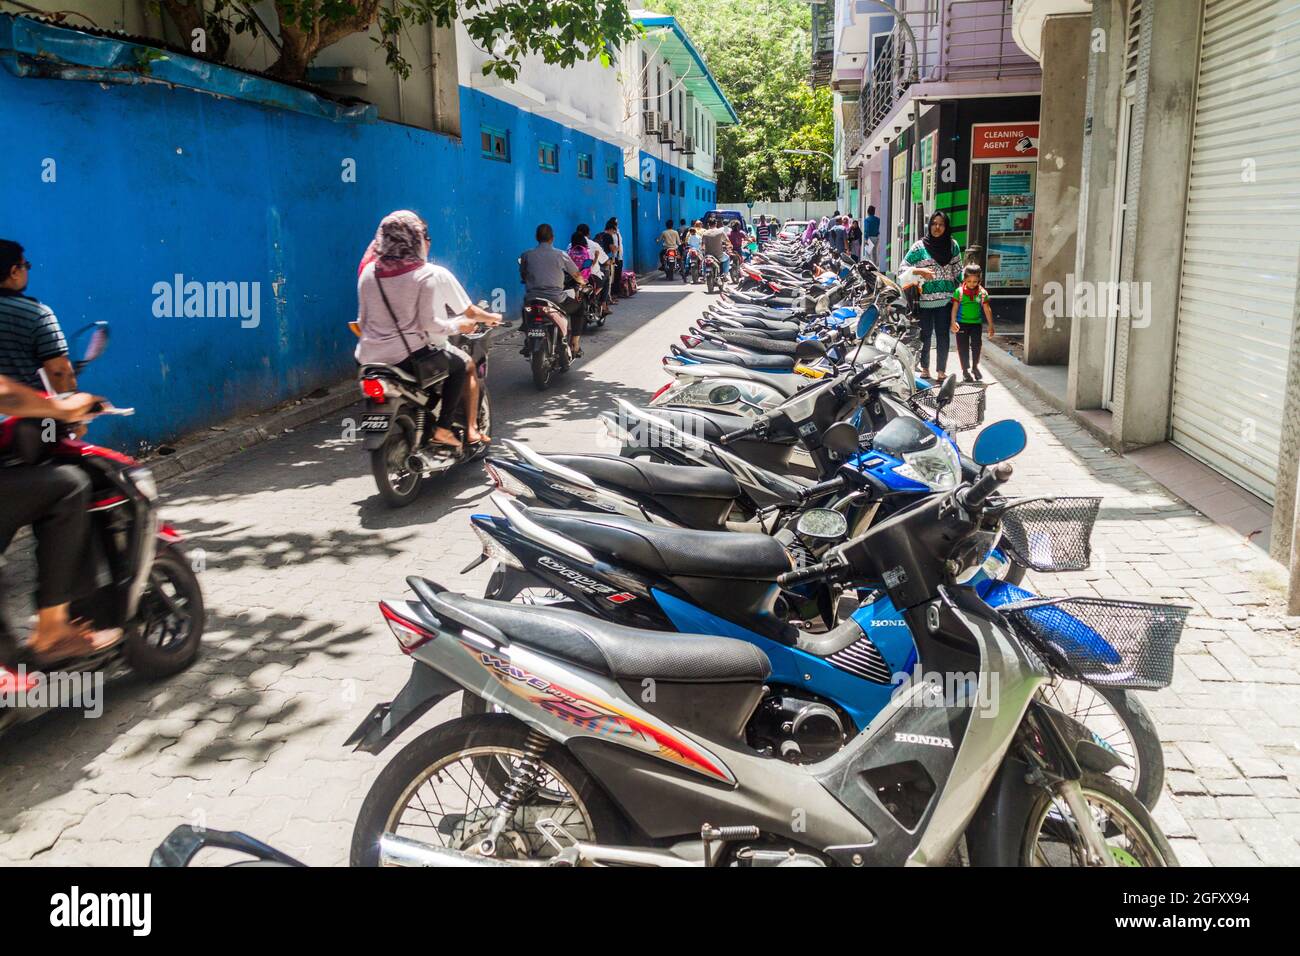 MÄNNLICH, MALEDIVEN - 11. JULI 2016: Reihe von Motorrädern in einer Gasse in Male, Malediven Stockfoto